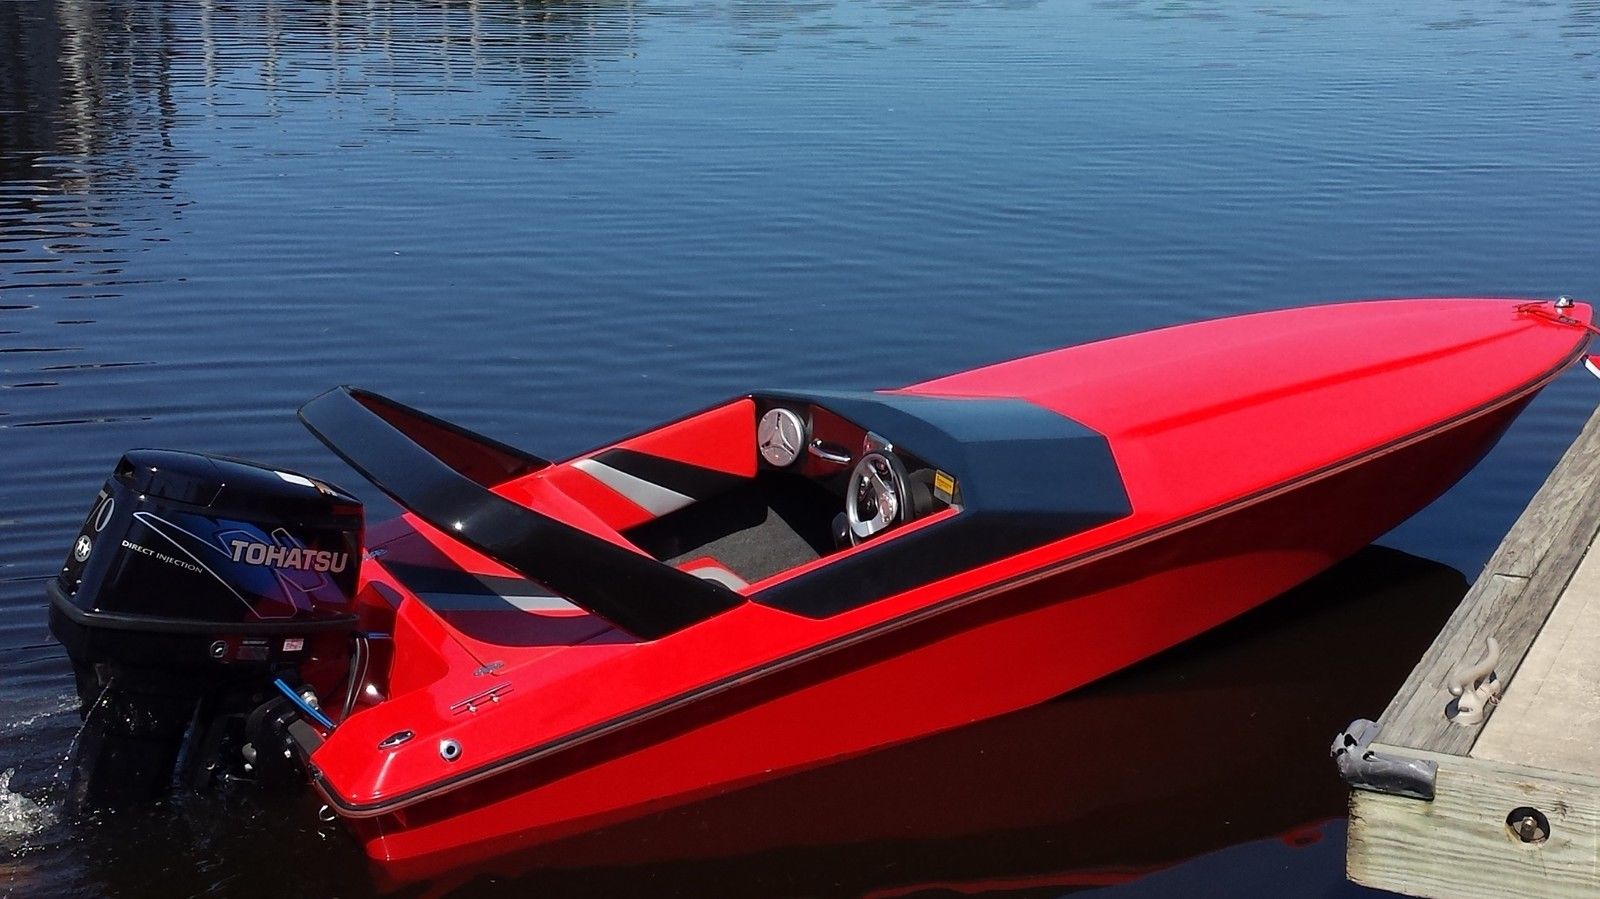 Mini Speedboat Cigarette, Fountain, Baja, Donzi F15 2009 for sale for $11,7...